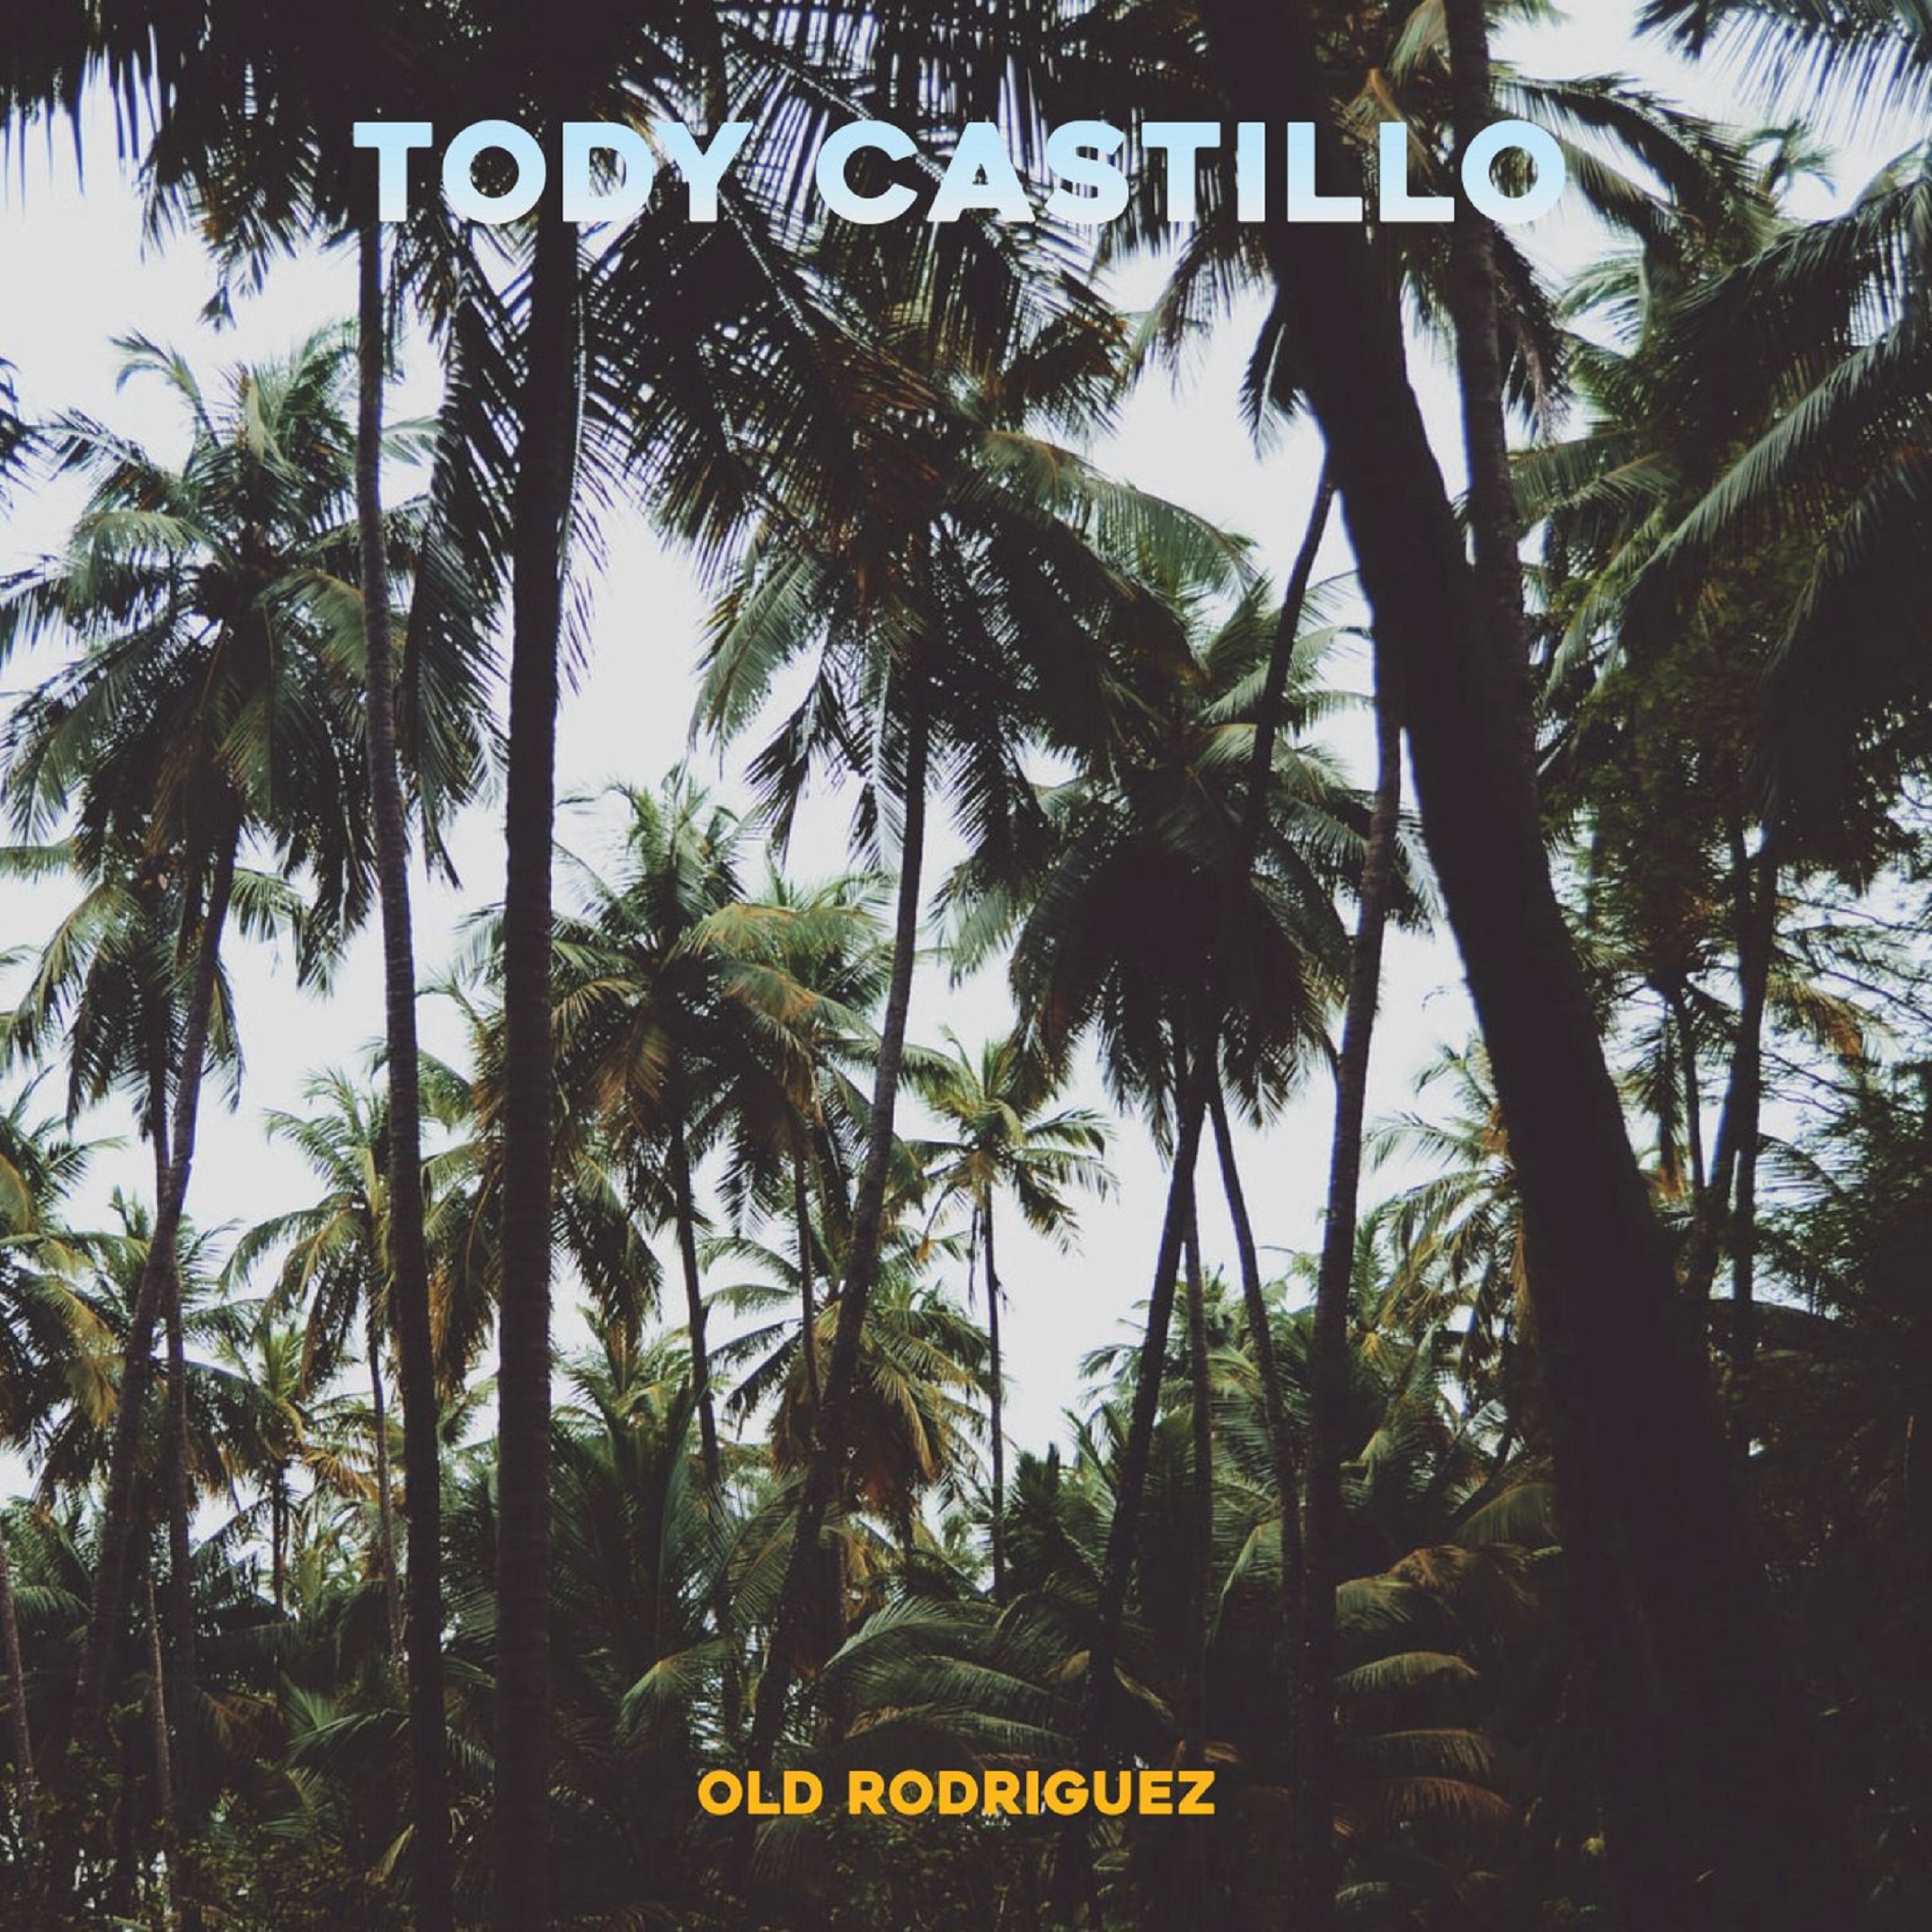 Tody Castillo Announces New Album ' Old Rodriguez'